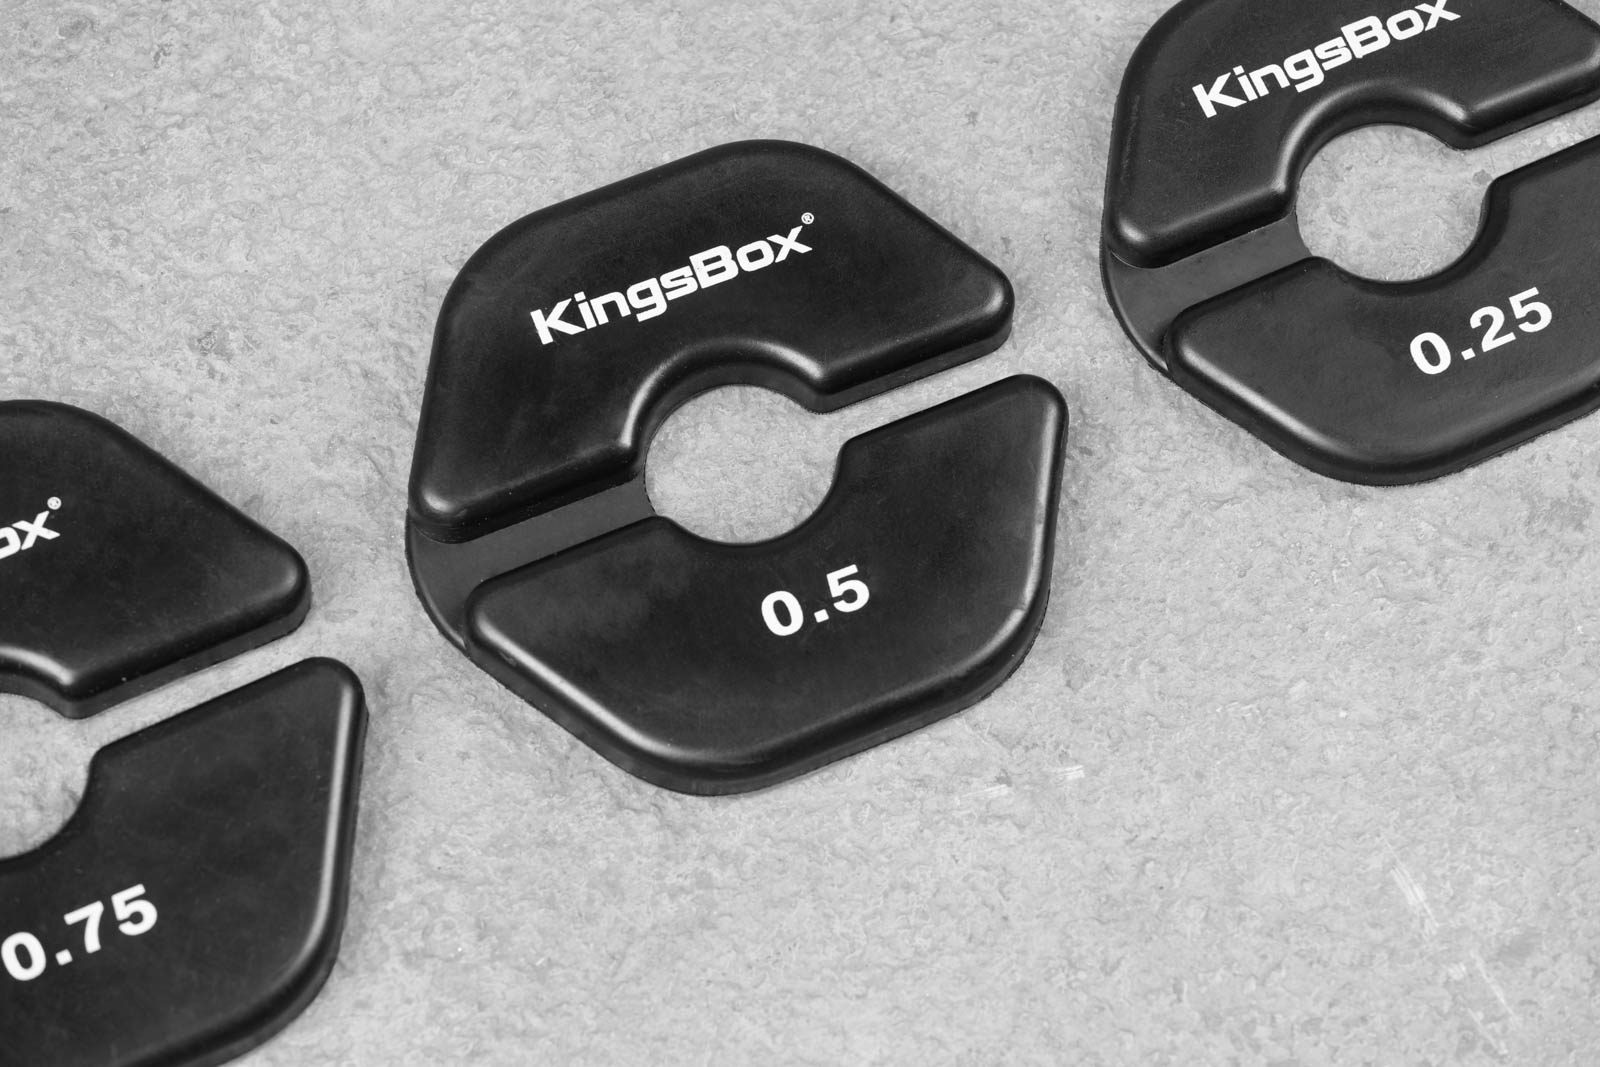 KingsBox Pack-man Weights | KingsBox